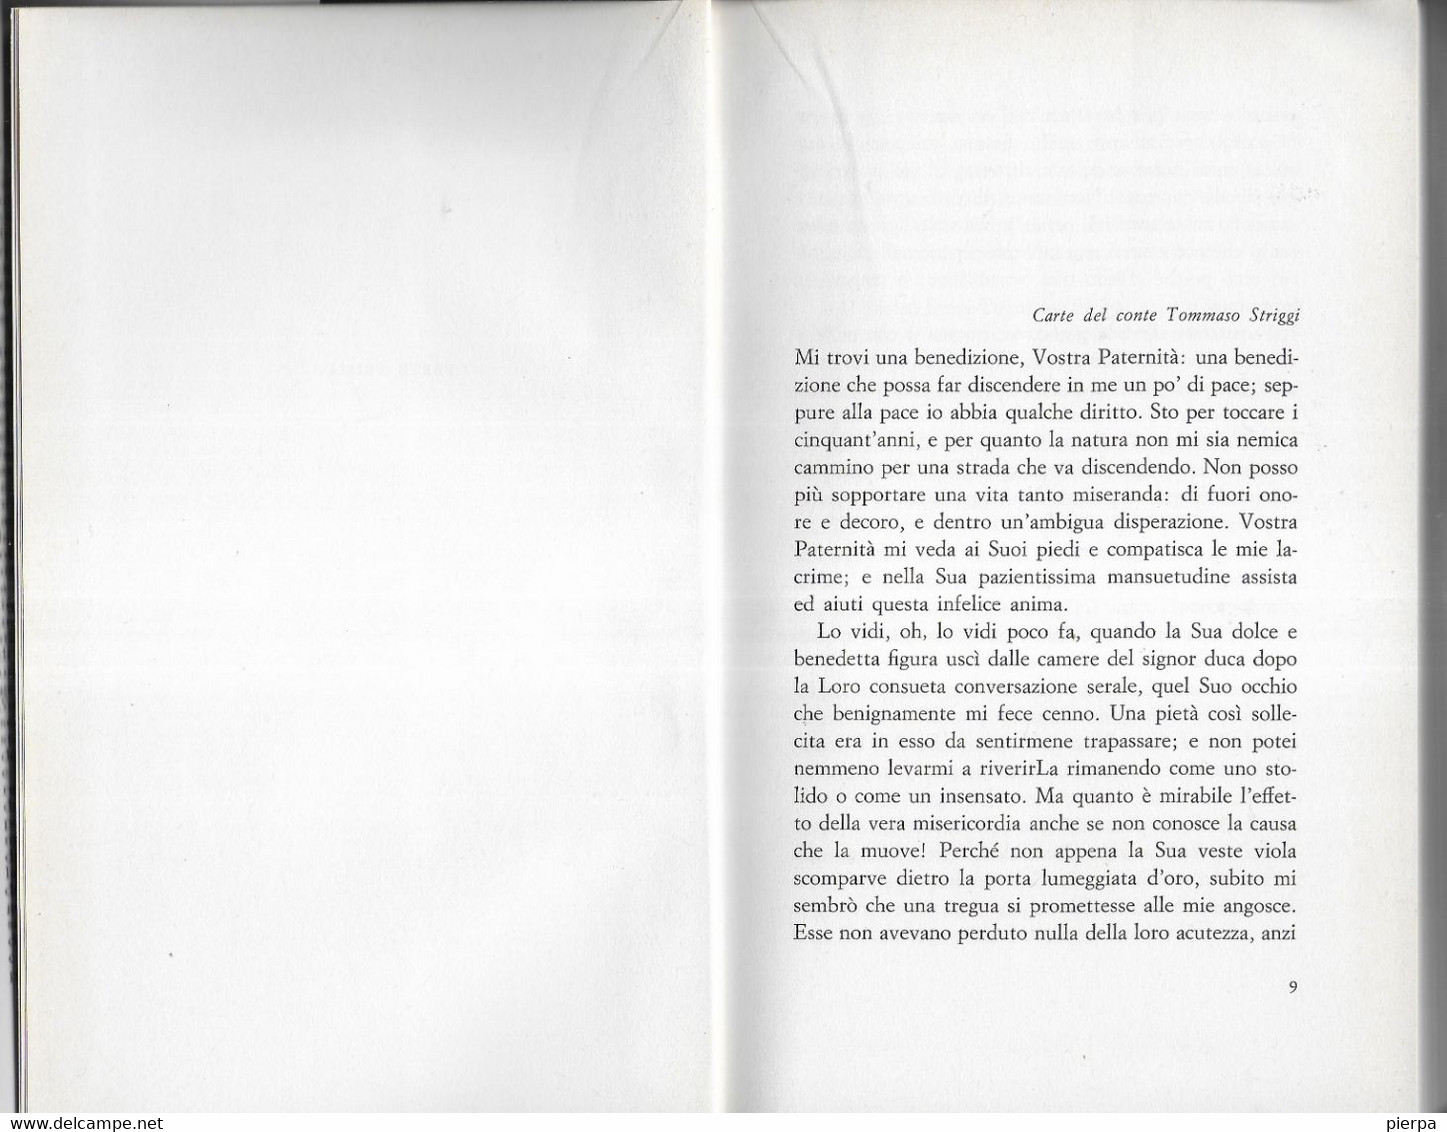 TU VIPERA GENTILE - MARIA BELLONCI - EDIZ. MONDADORI 1972 - PAG 300 - FORMATO 13,50 X 21 0 USATO BUON STATO - Novelle, Racconti